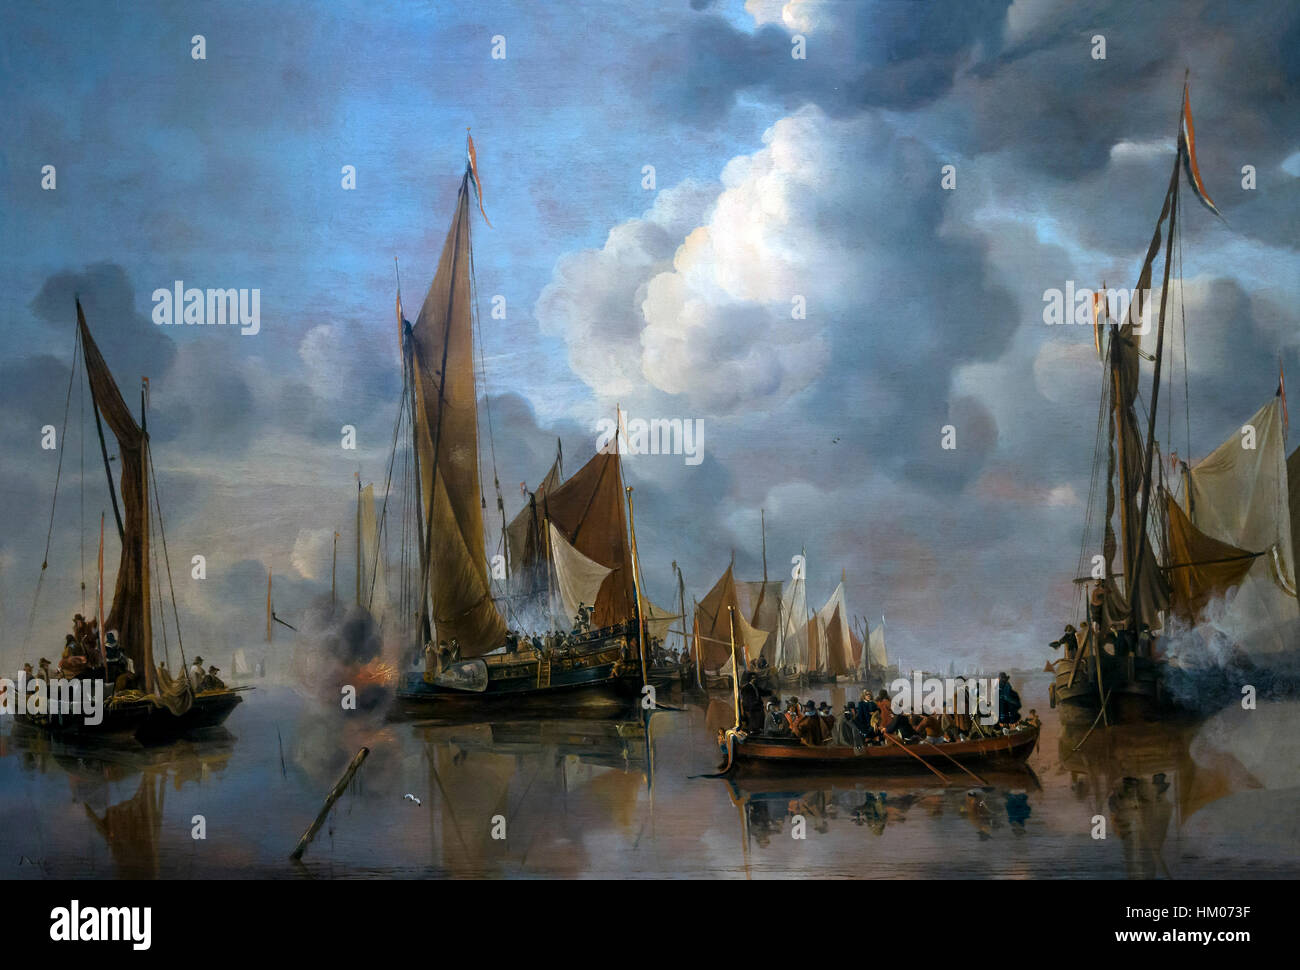 La flota en casa saludando la barcaza estatal, por Jan van de cappelle, 1650, óleo sobre panel, Rijksmuseum, Amsterdam, Países Bajos, Europa Foto de stock